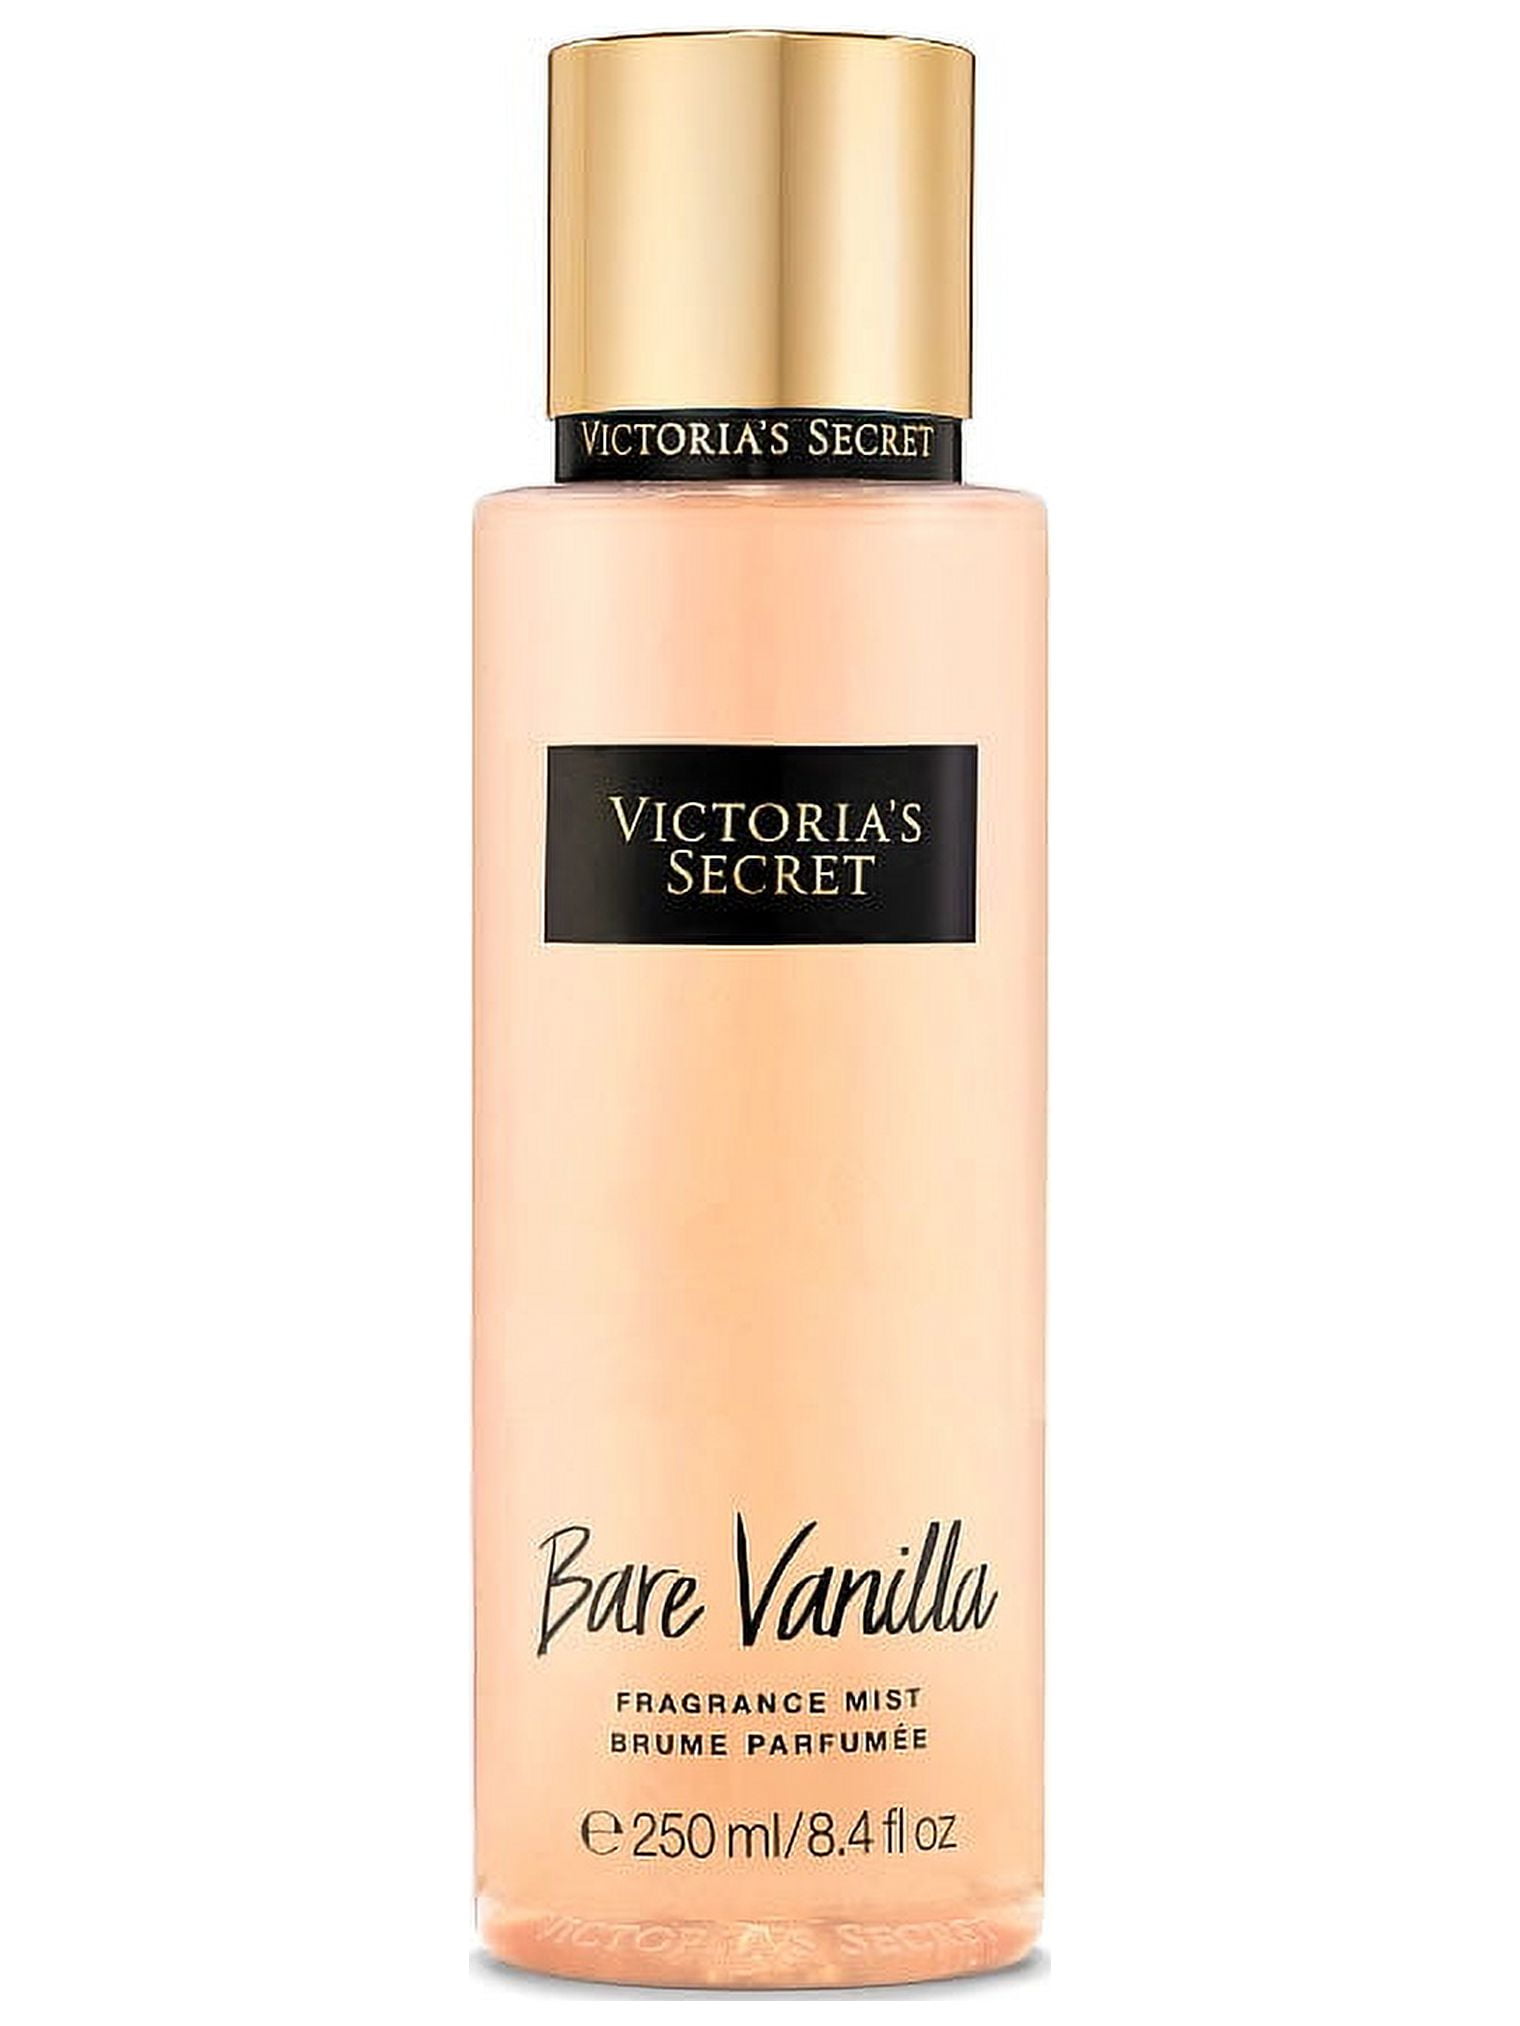 Victoria's Secret Bare Vanilla Gift Set Includes 250ml Body Mist